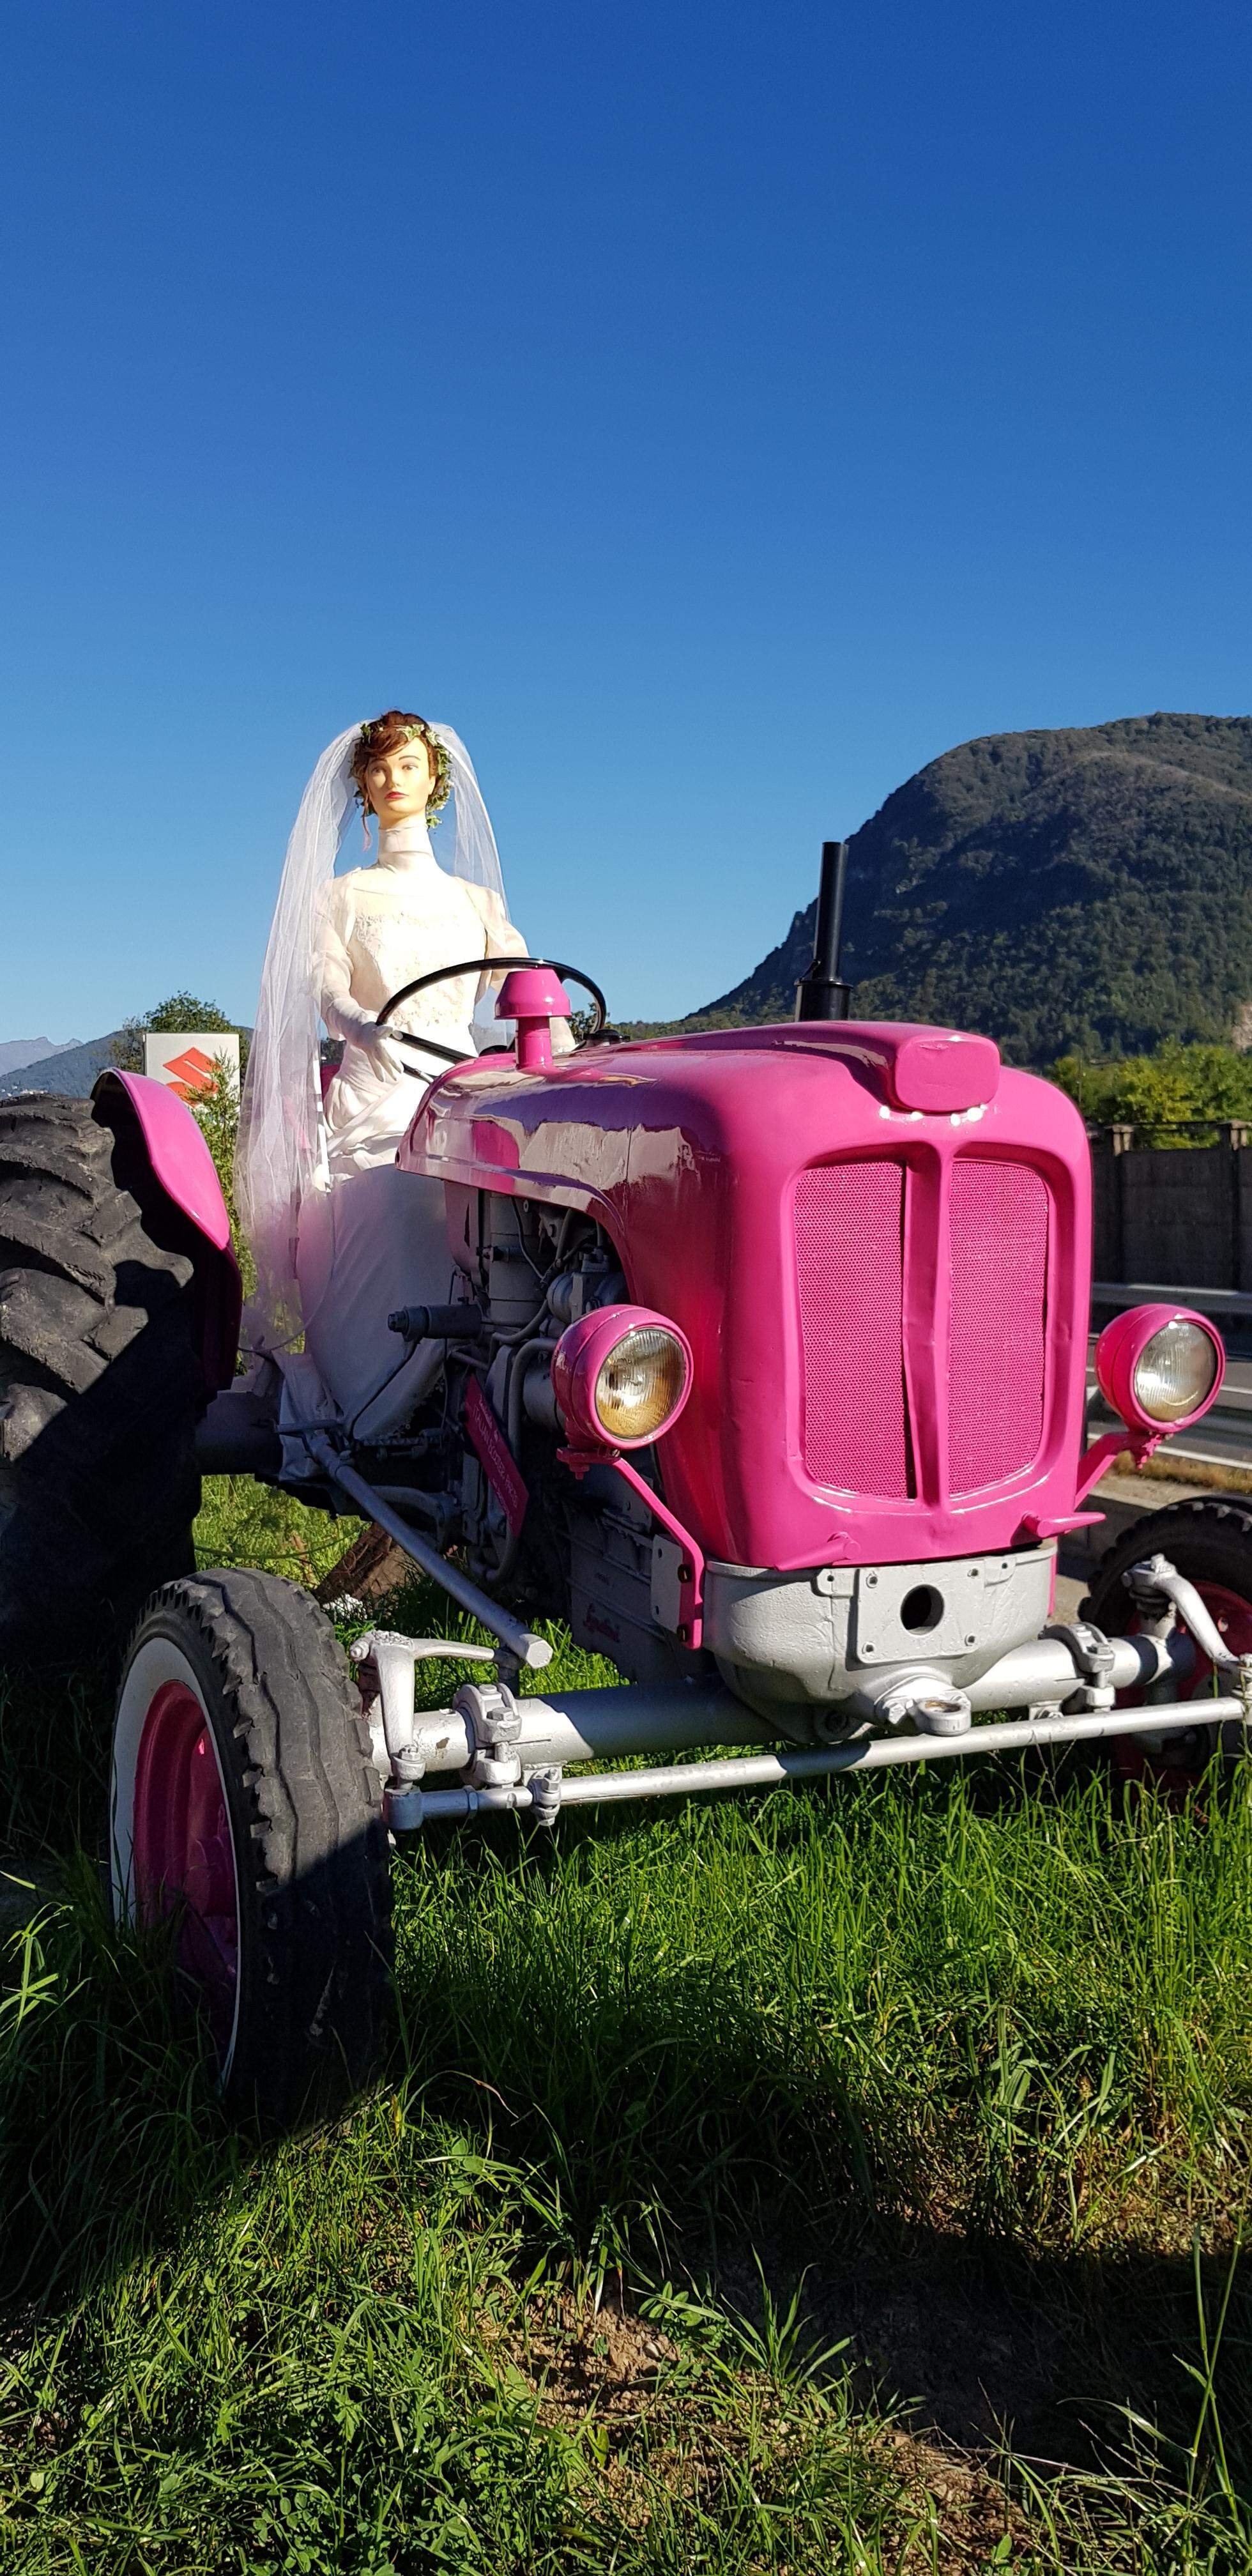 Evento di wedding planner con installazione della sposa sul trattore